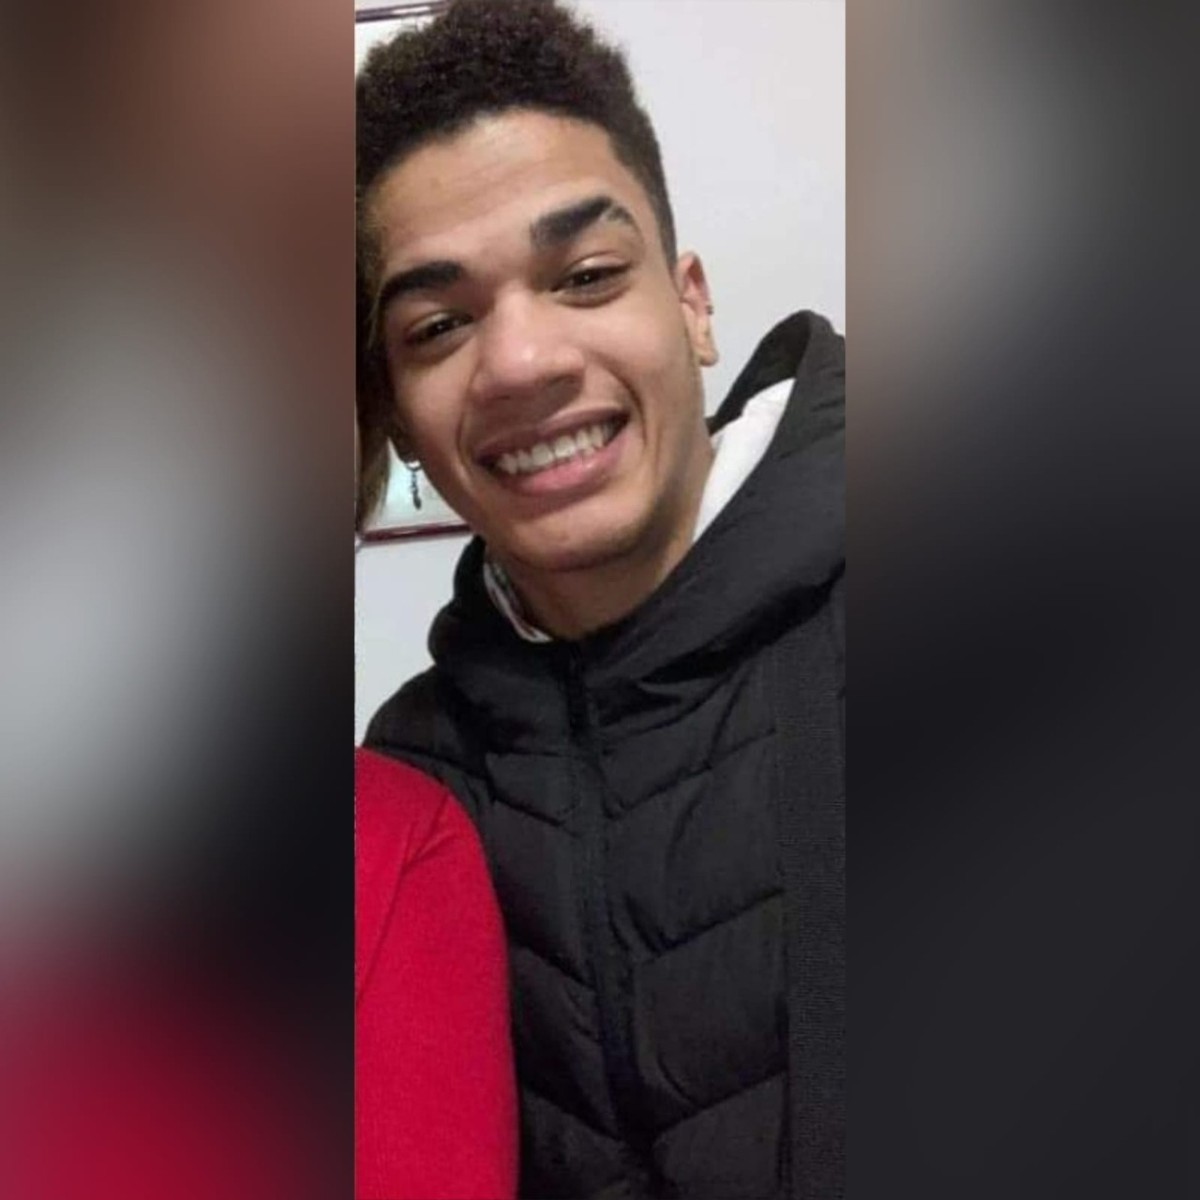 Un jeune de 19 ans quitte la France pour rendre visite à son père à MT et disparaît lors d’un transfert dans un aéroport |  Mato Grosso